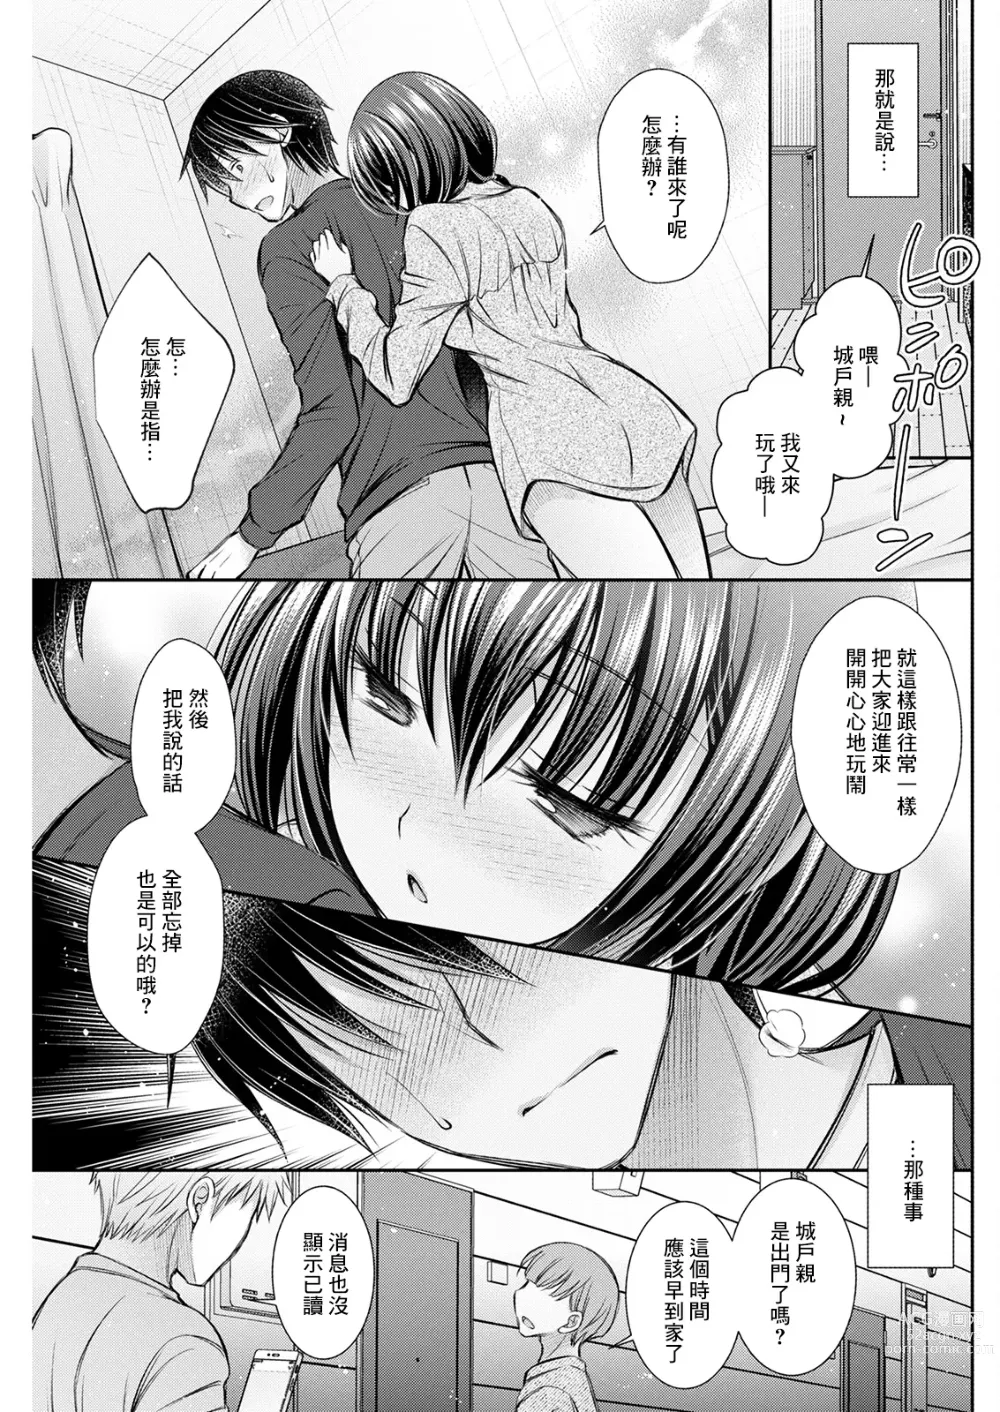 Page 5 of manga Hang Out